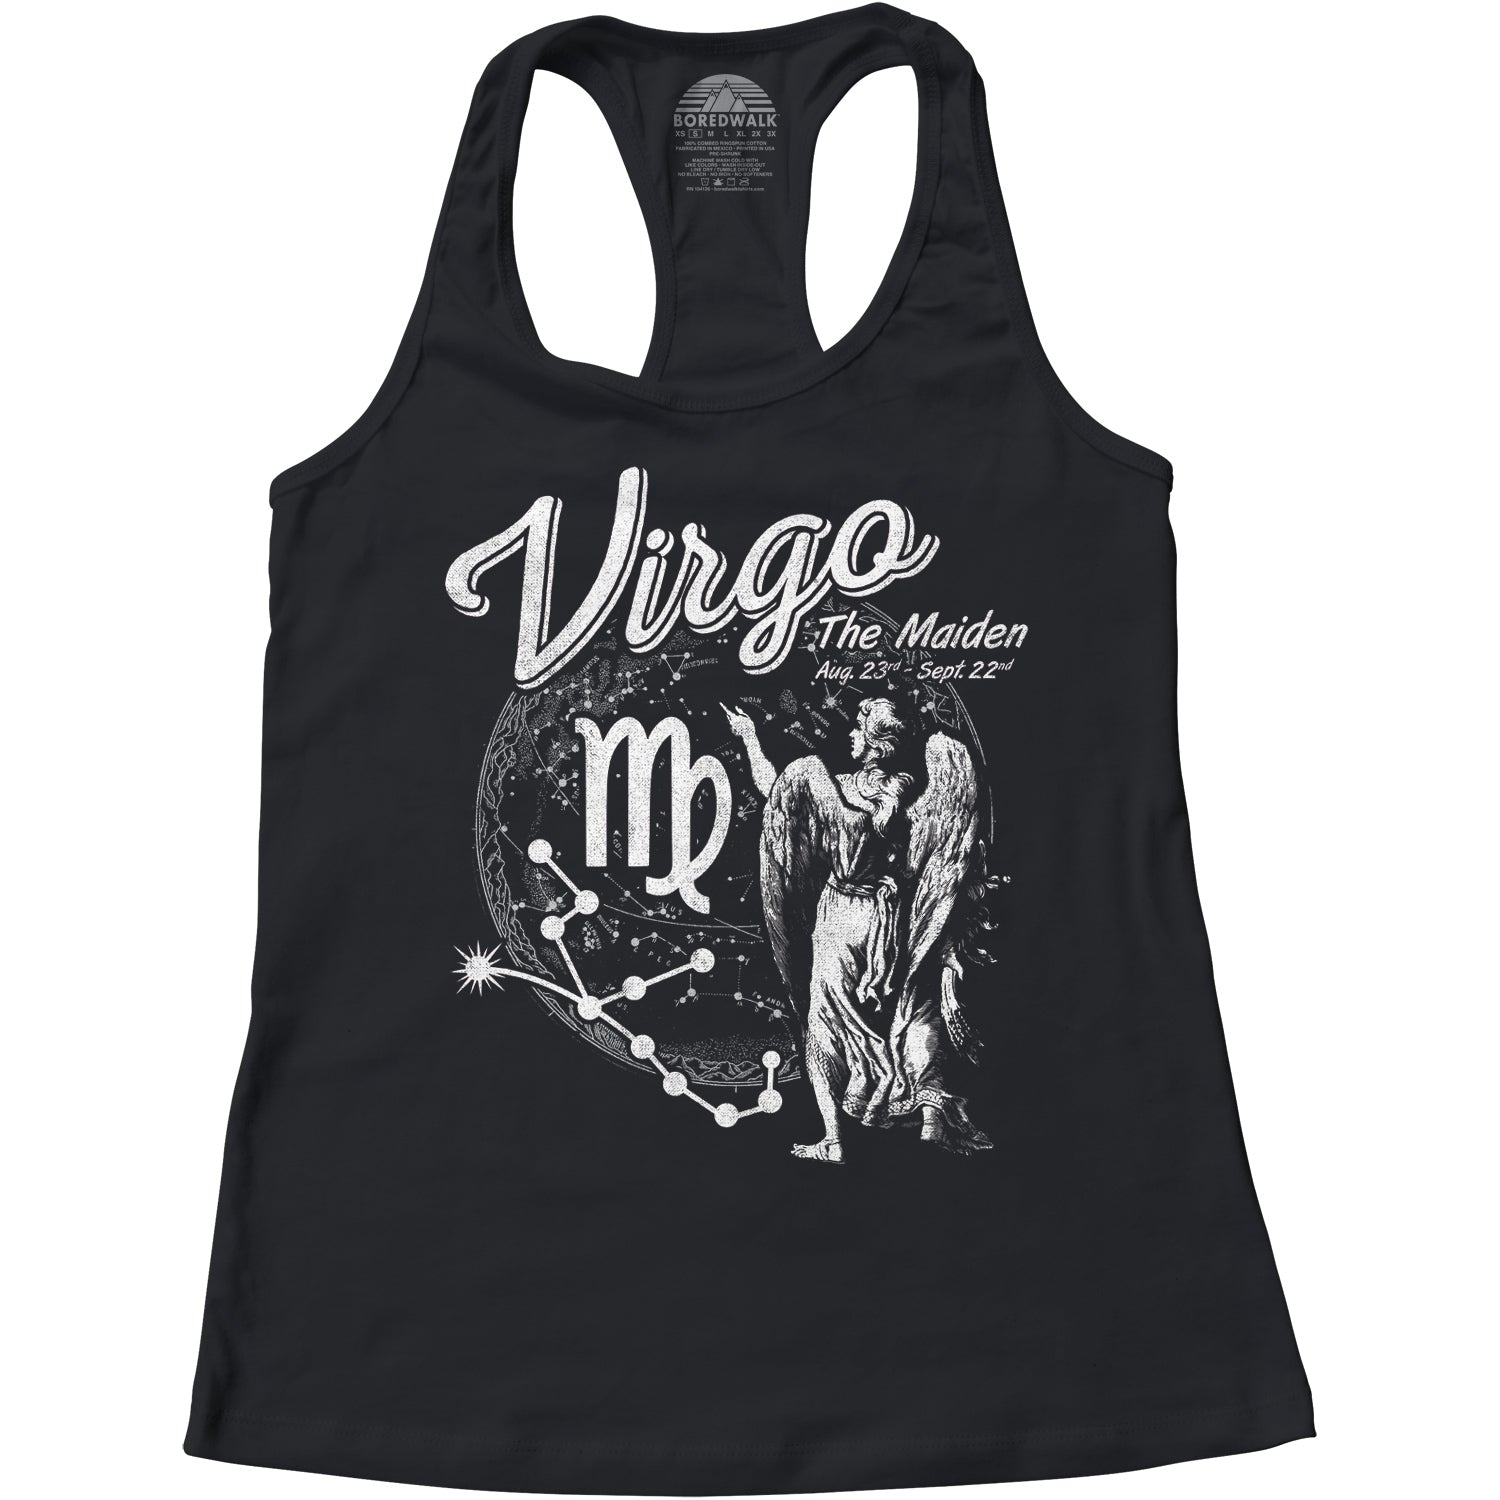 Women's Vintage Virgo Racerback Tank Top